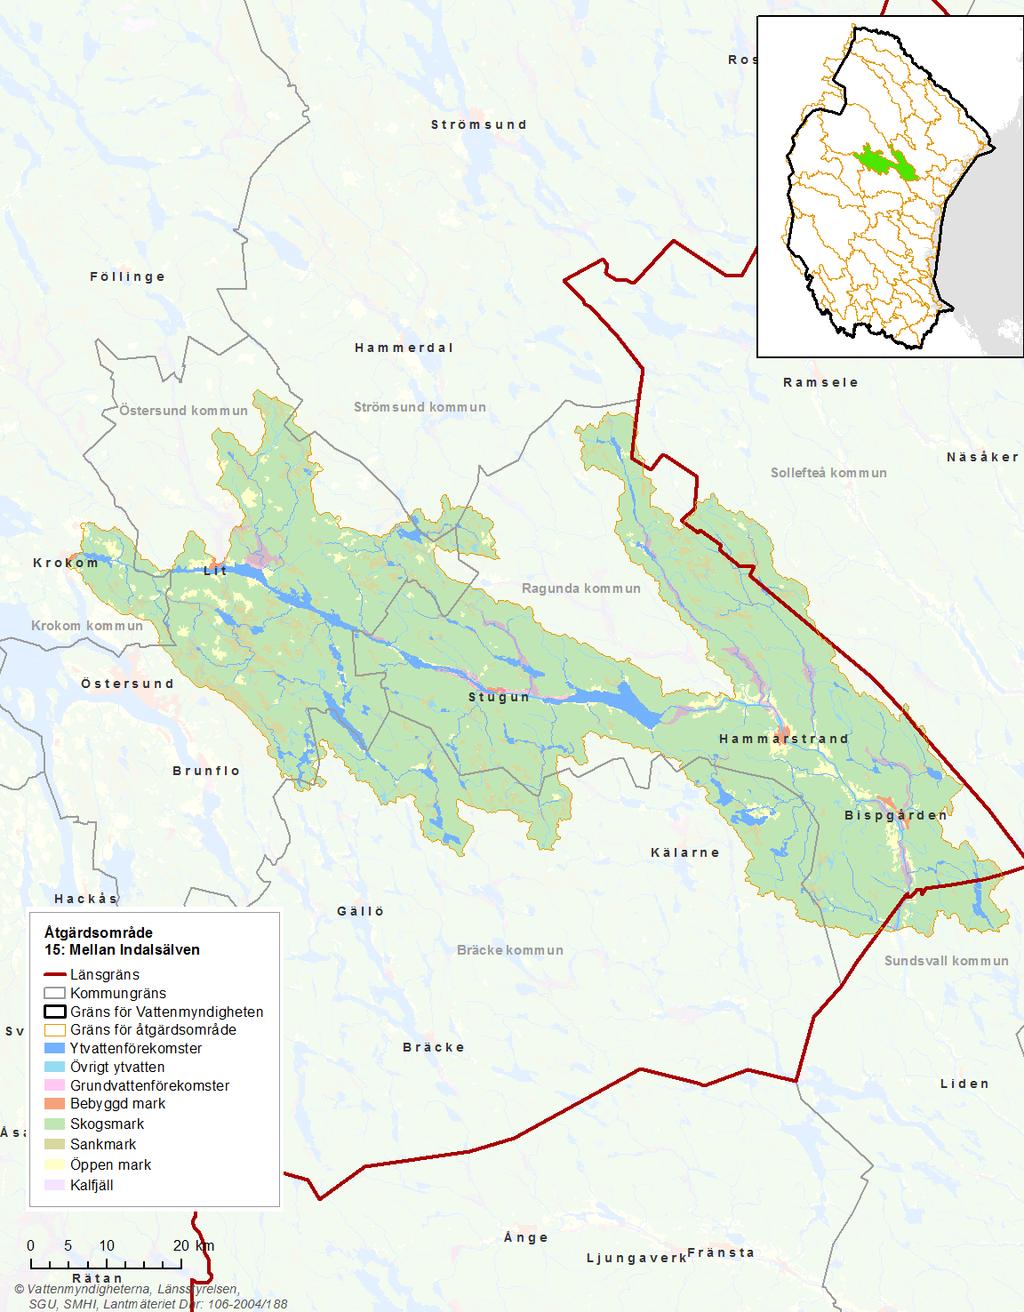 Bild 1: Kartan visar Mellan Indalsälvens markanvändning